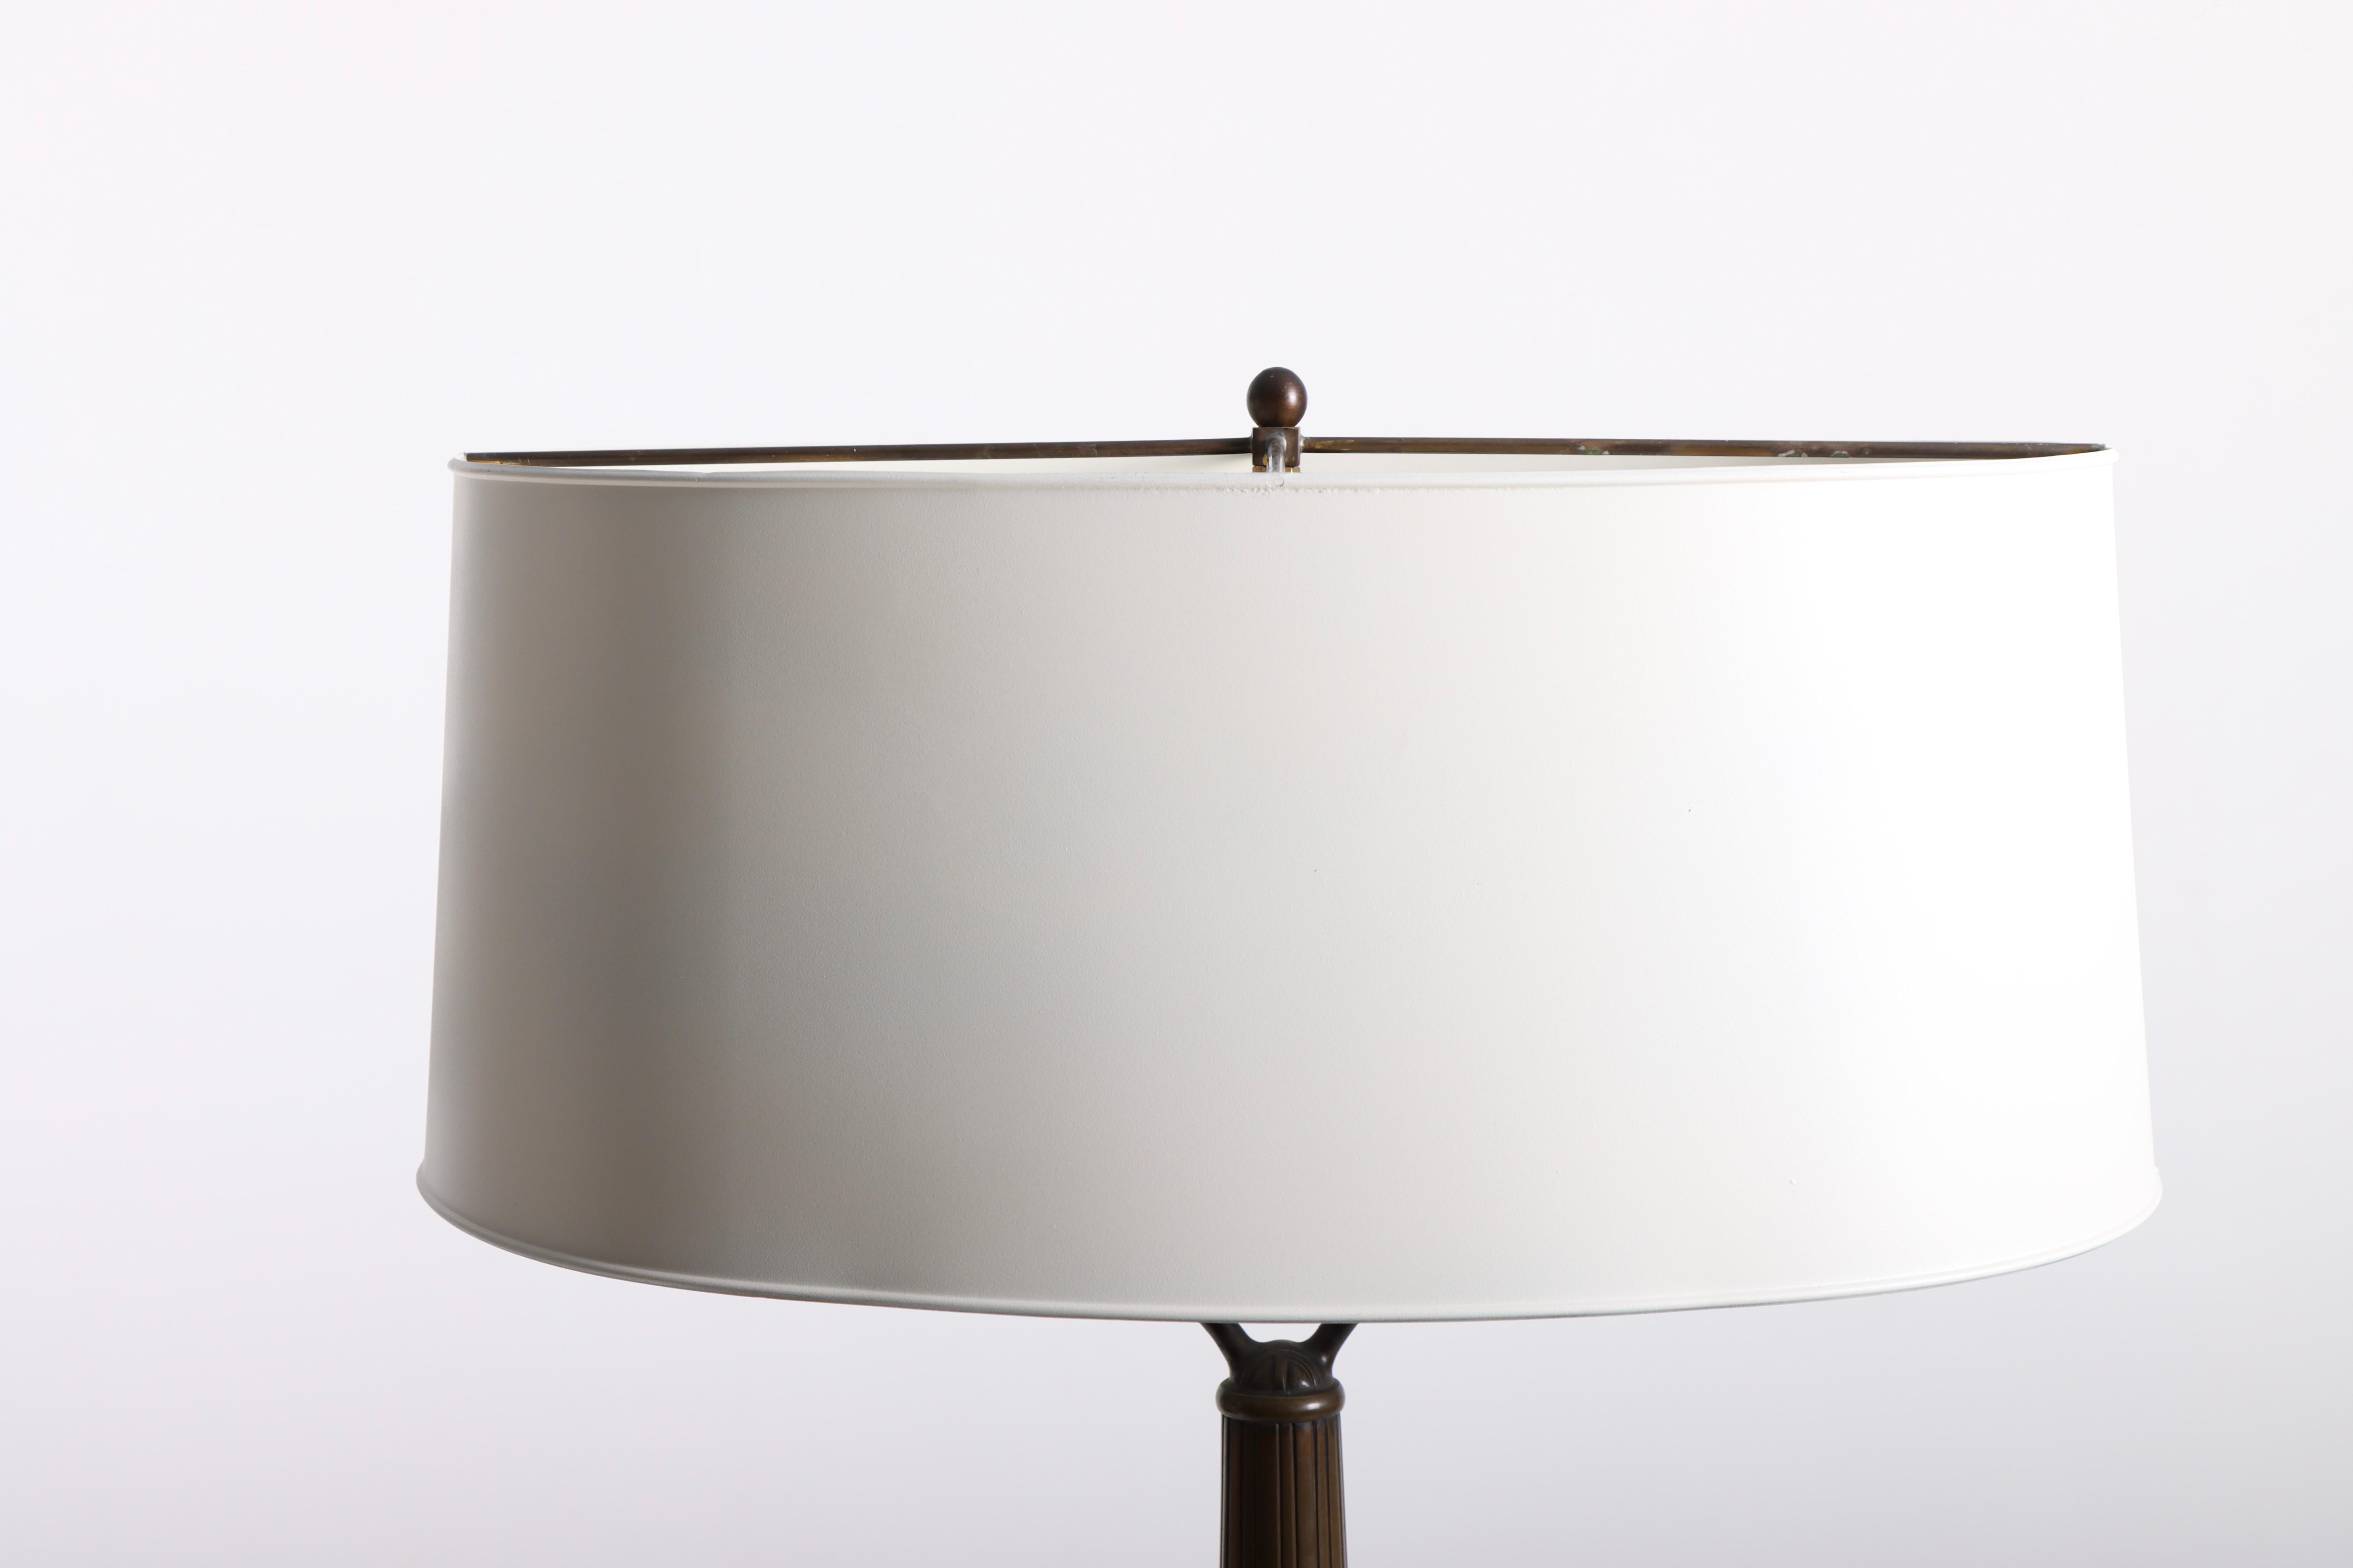 Lampe de table en laiton patiné avec ornementation art nouveau en relief, conçue par Mogens Ballin et fabriquée par Hertz Ballin au Danemark. Excellent état d'origine.